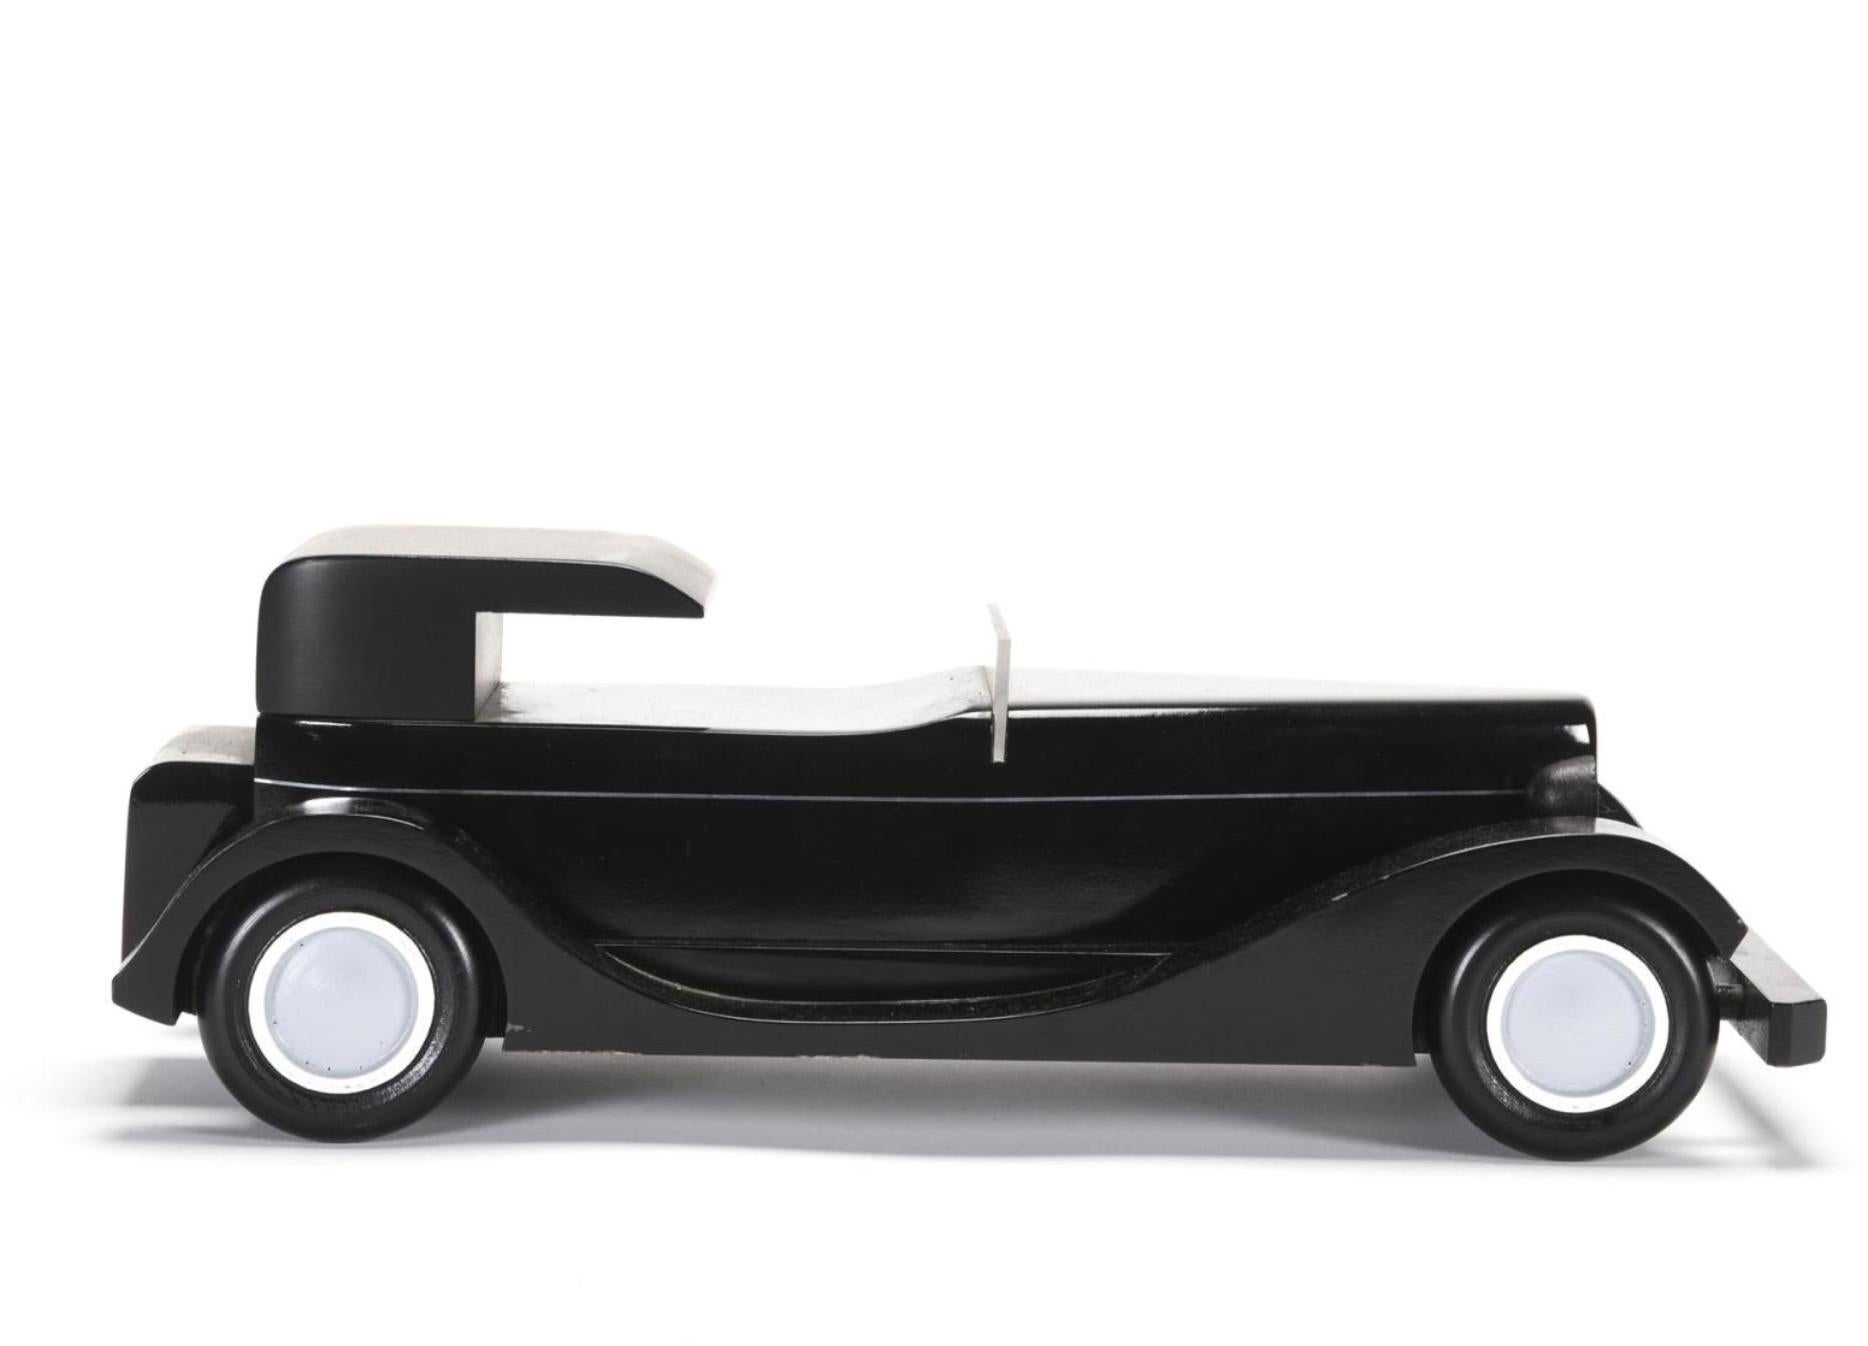 Vintage By modèle de Coupe Chauffeur noir H6C 1930 avec étiquette Hispano Suiza.
12.5/38/15 ??.
France.